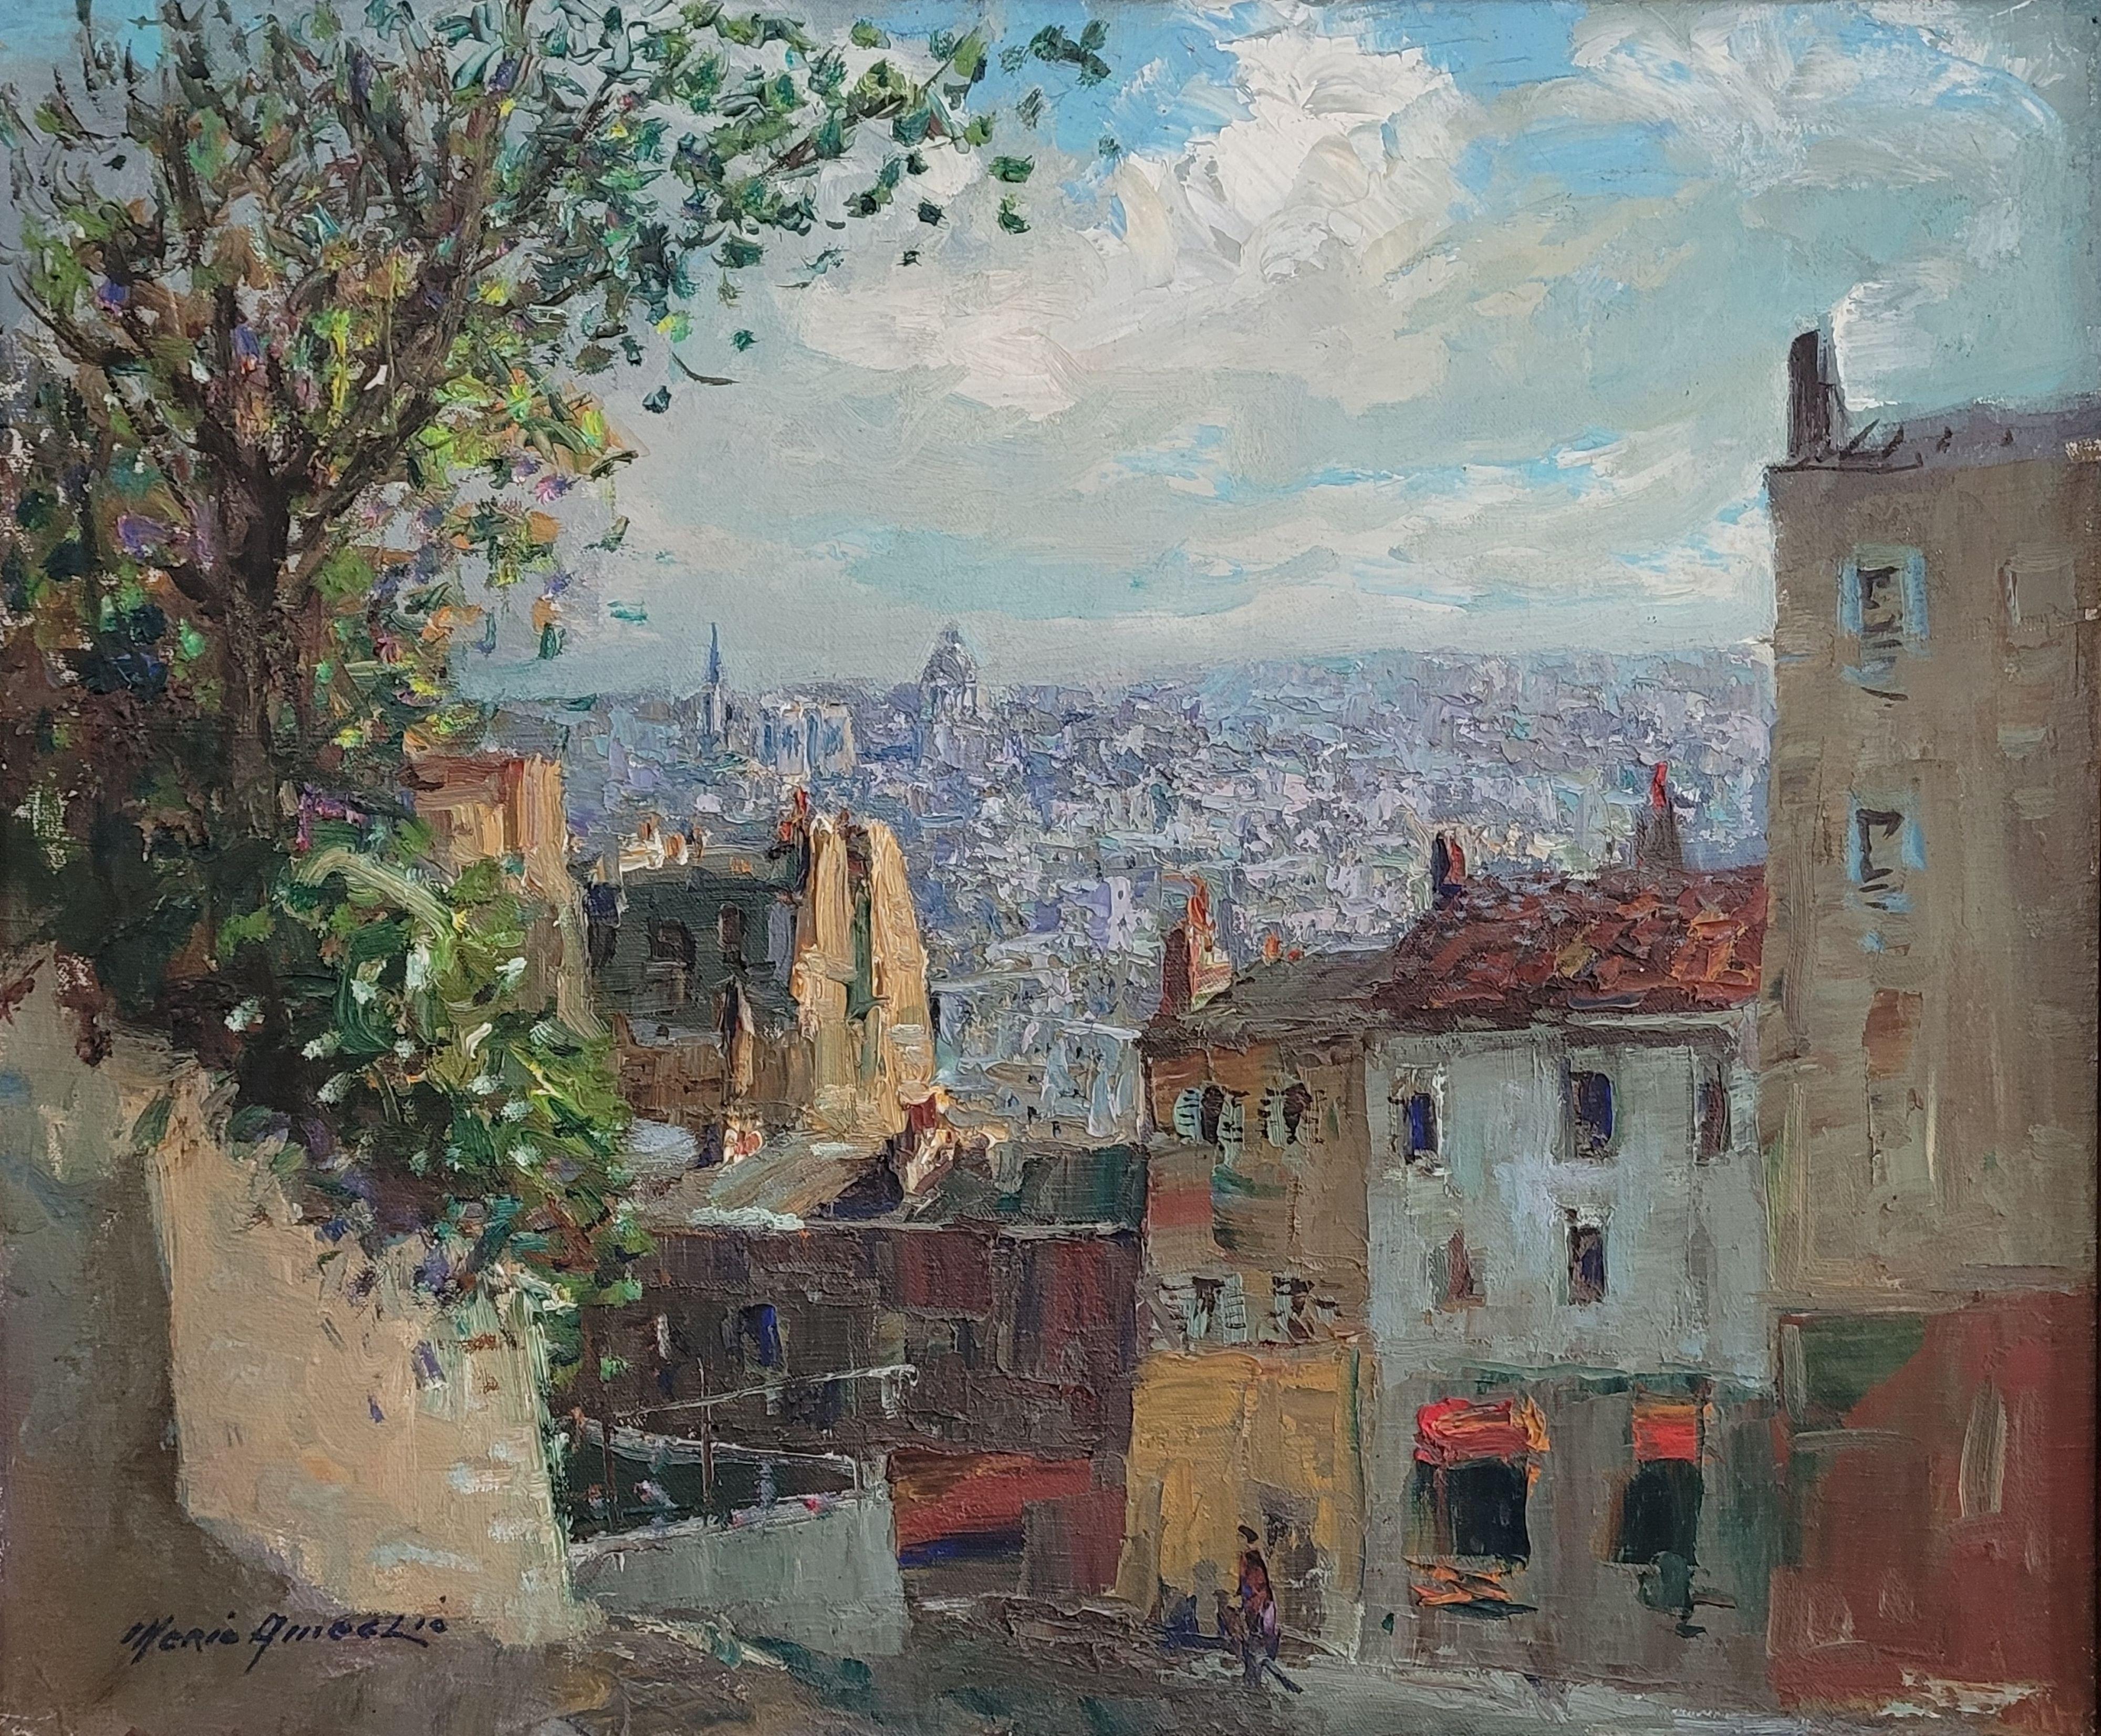 Paris vu de Montmartre - Painting by Merio Ameglio